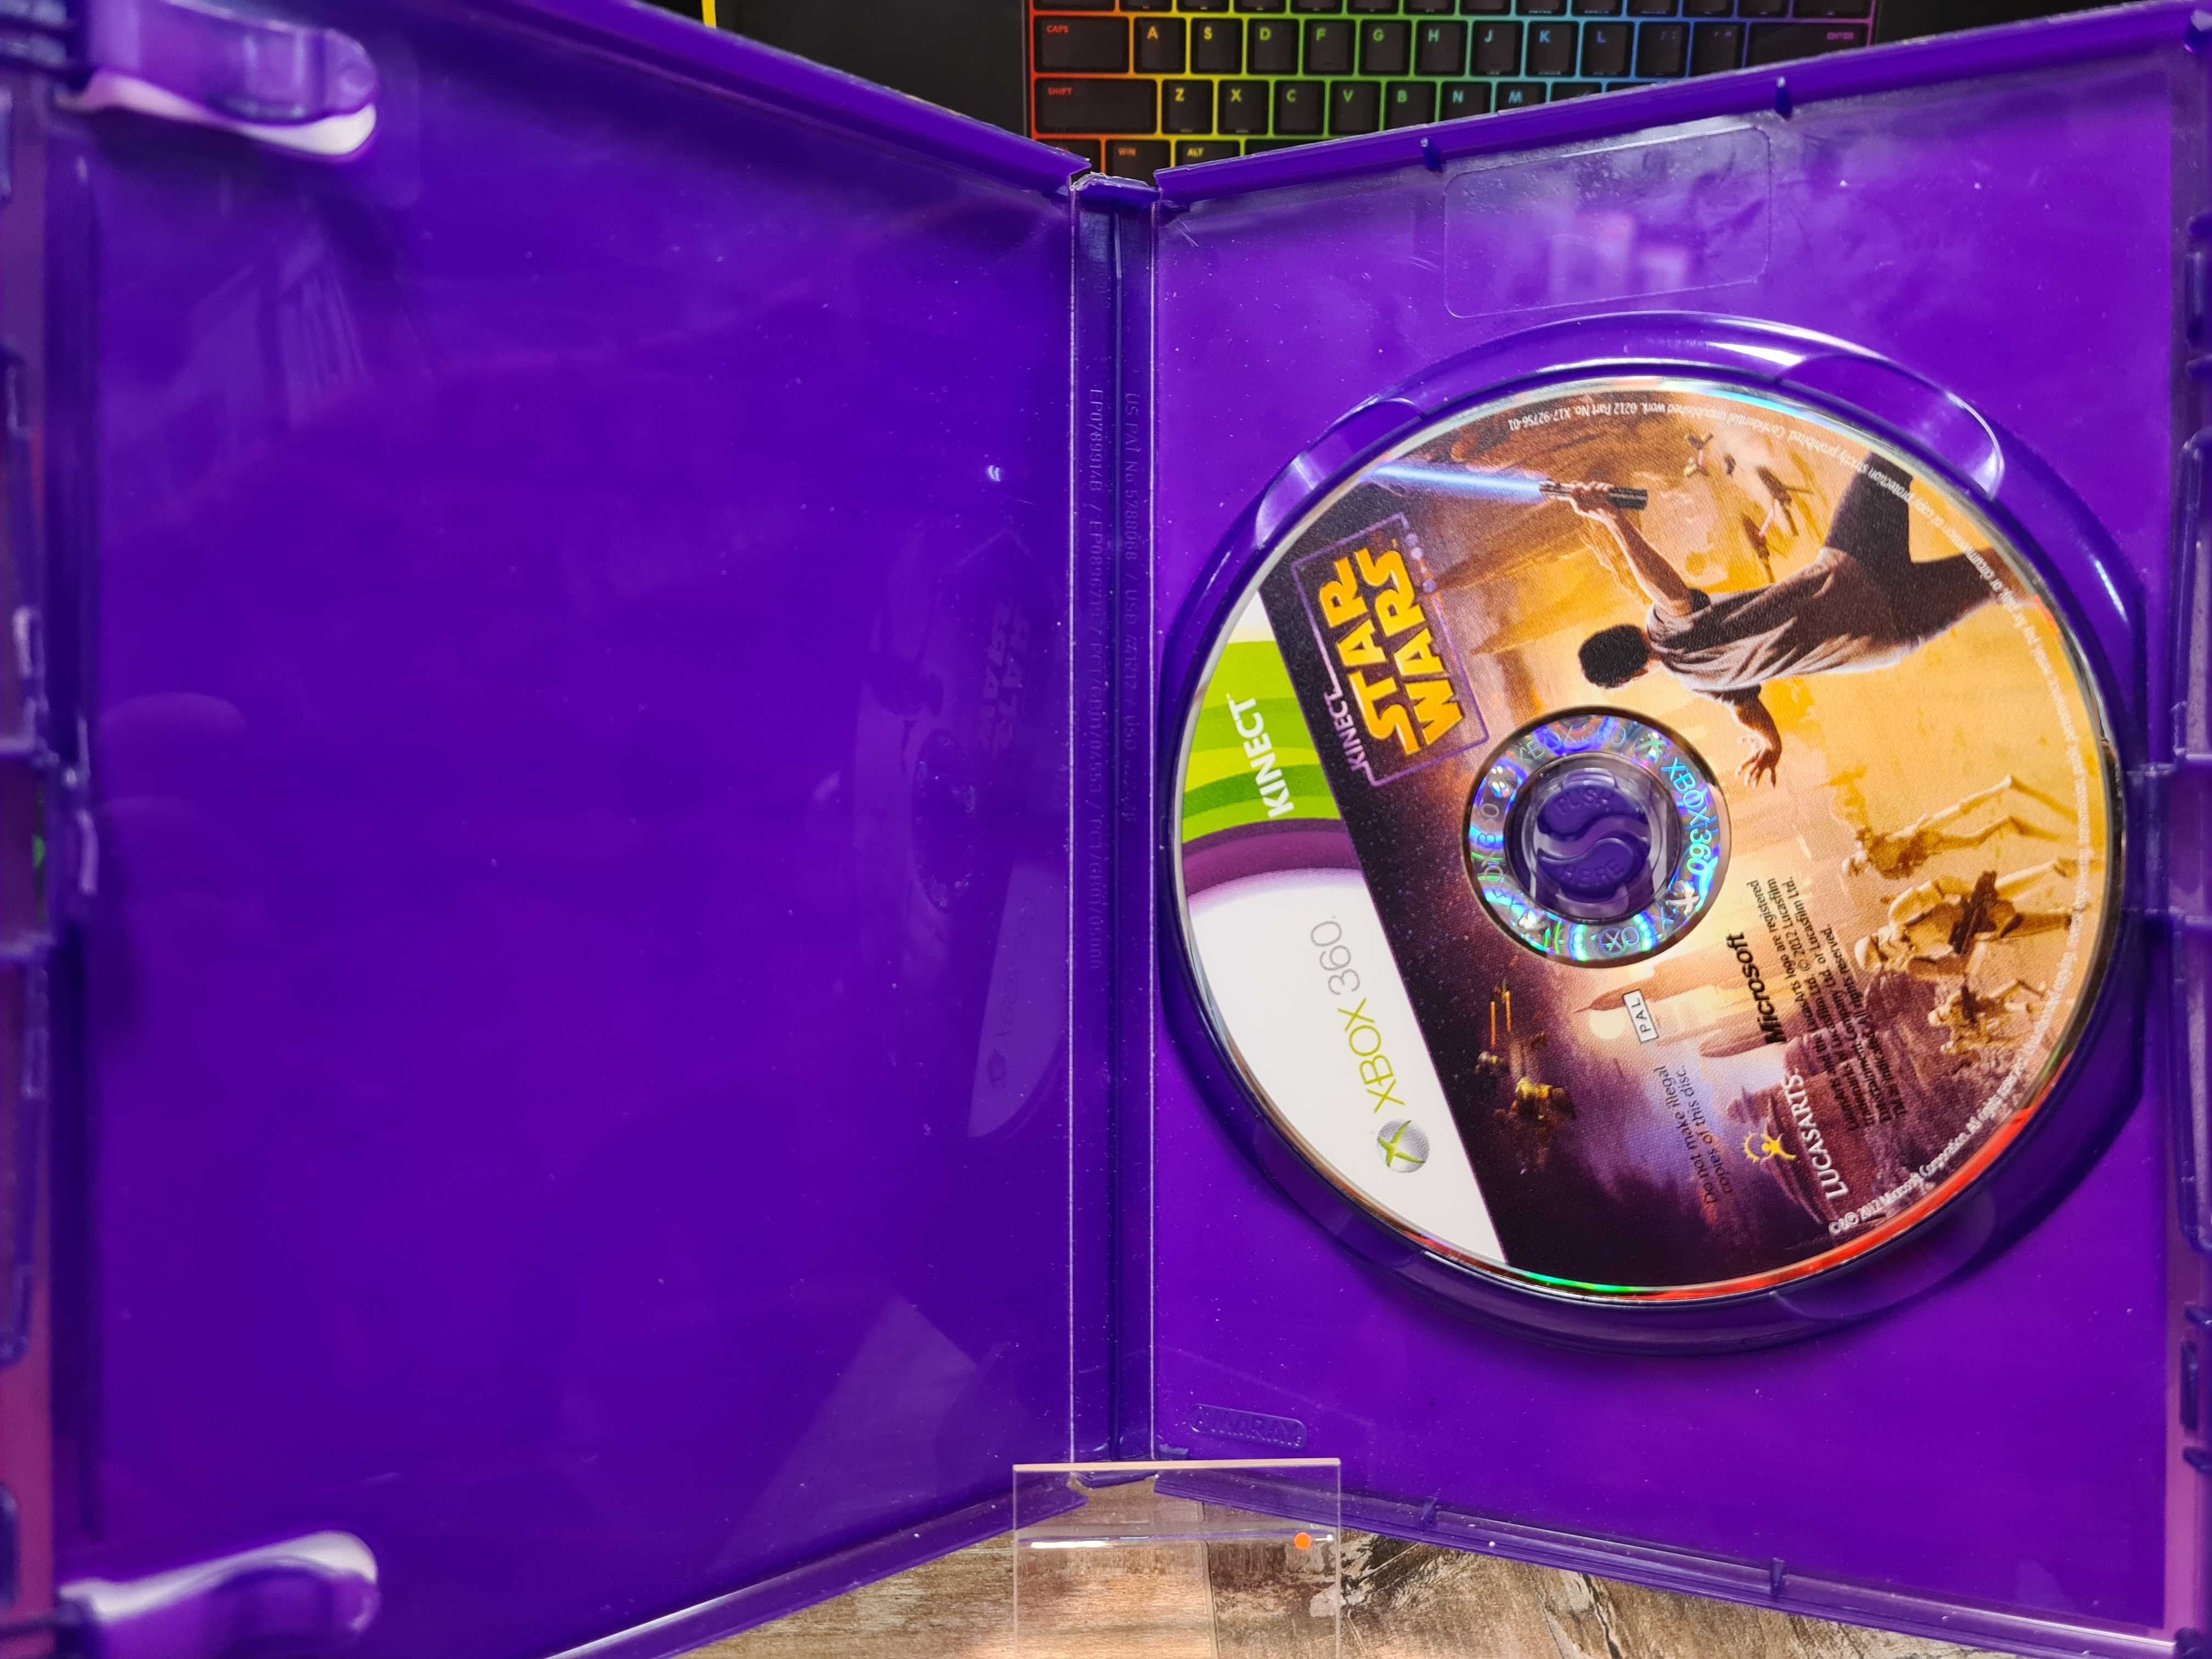 Kinect Star Wars X360, Sklep Wysyłka Wymiana